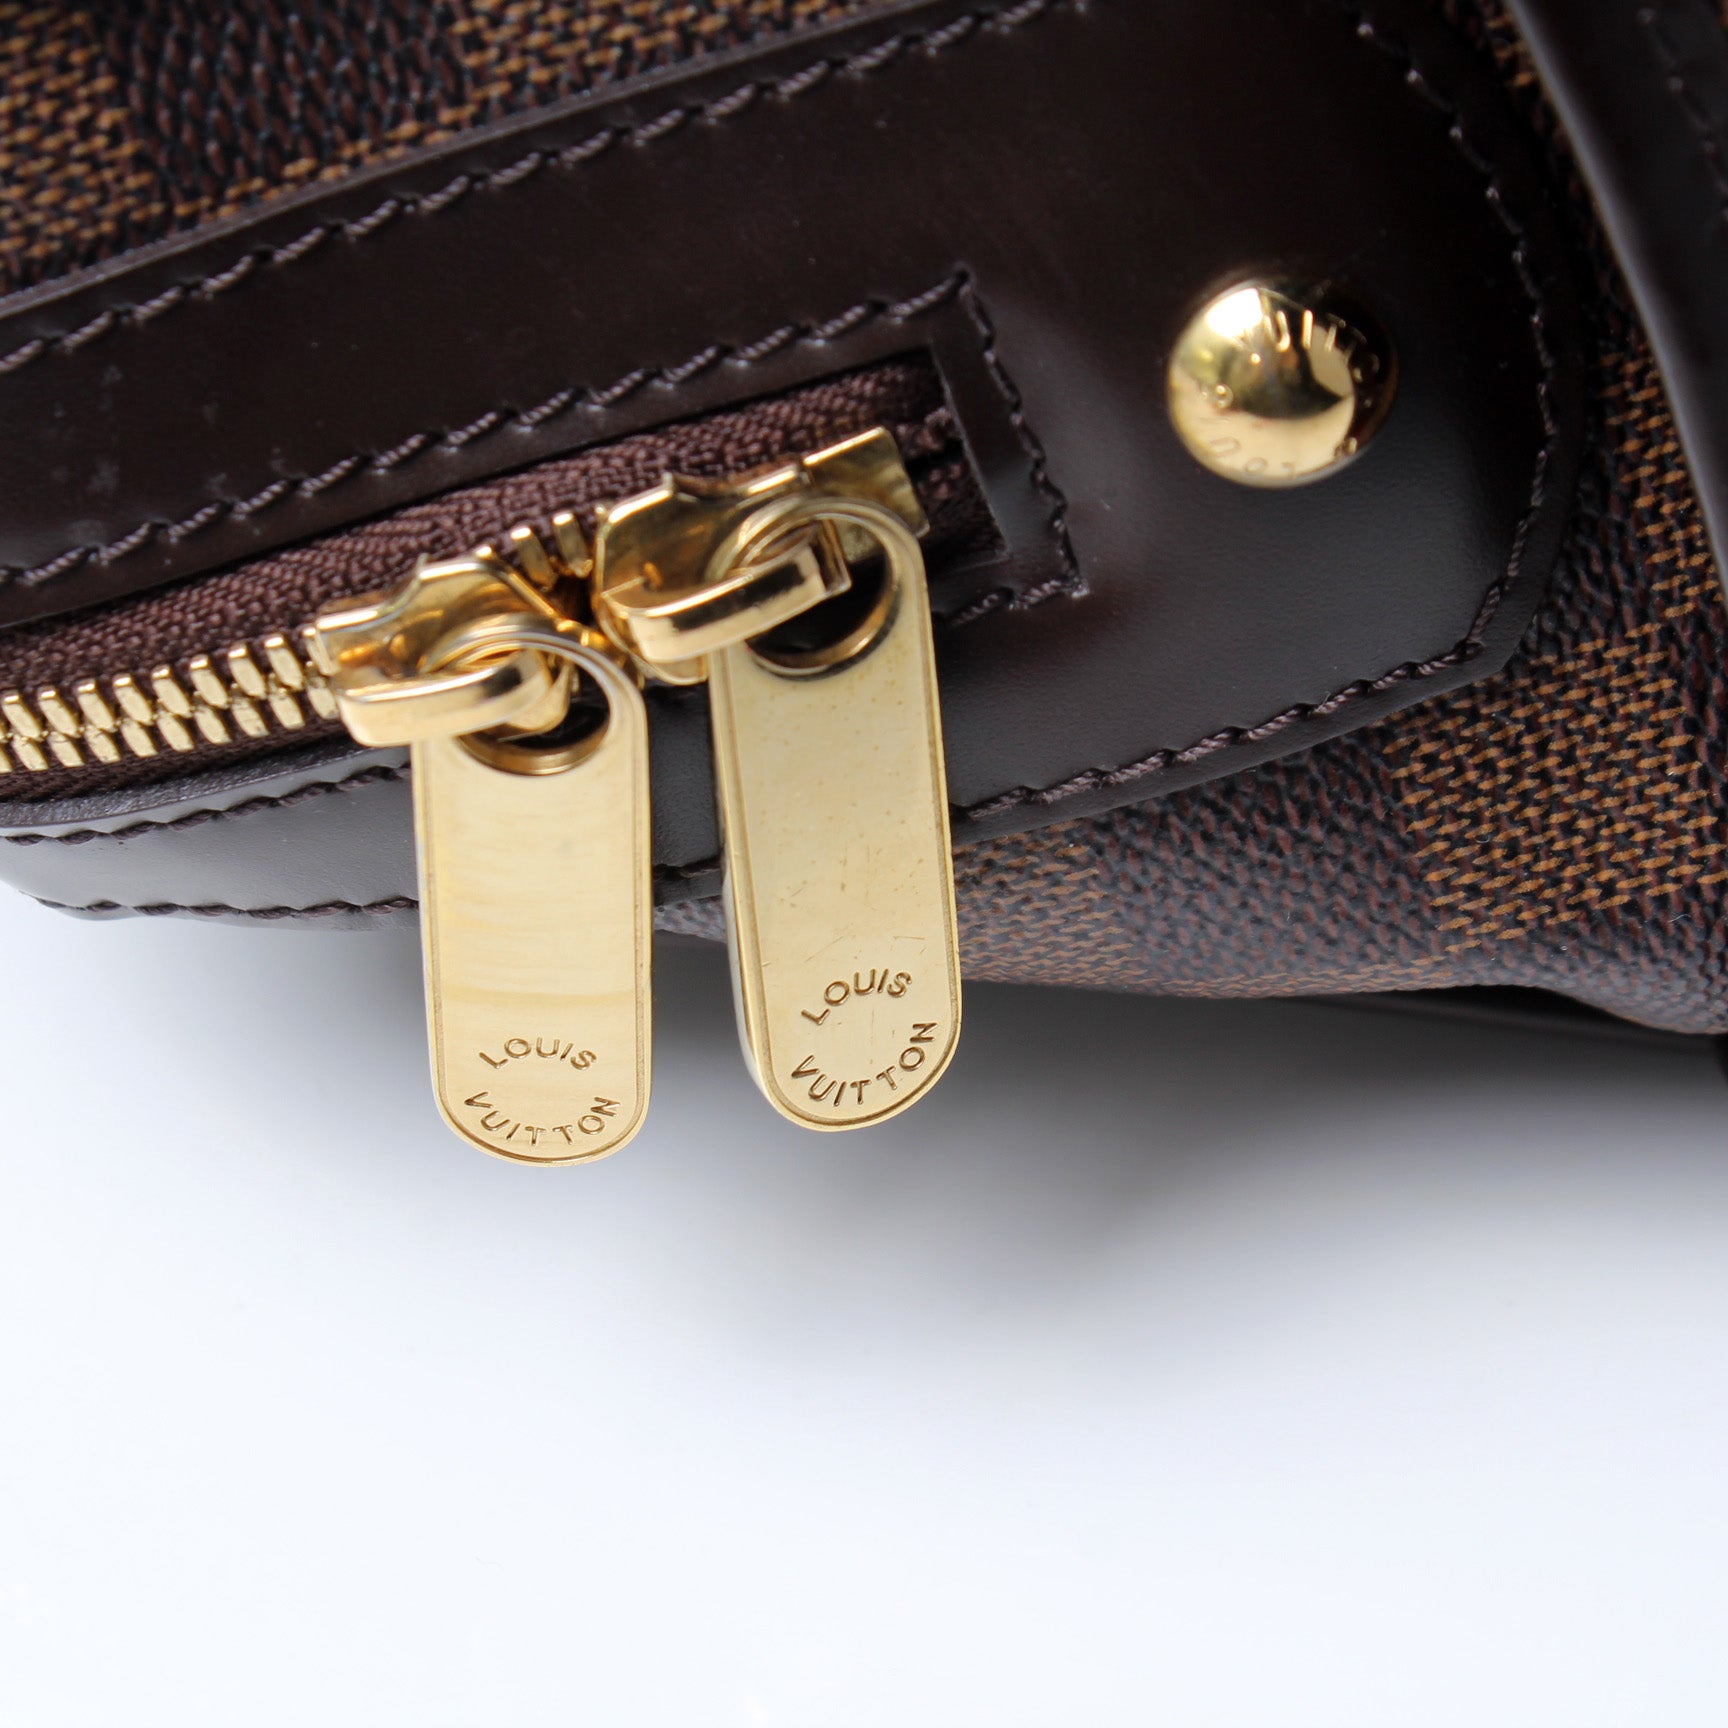 Authentic Louis Vuitton , • Damier Ebene Berkeley Bag